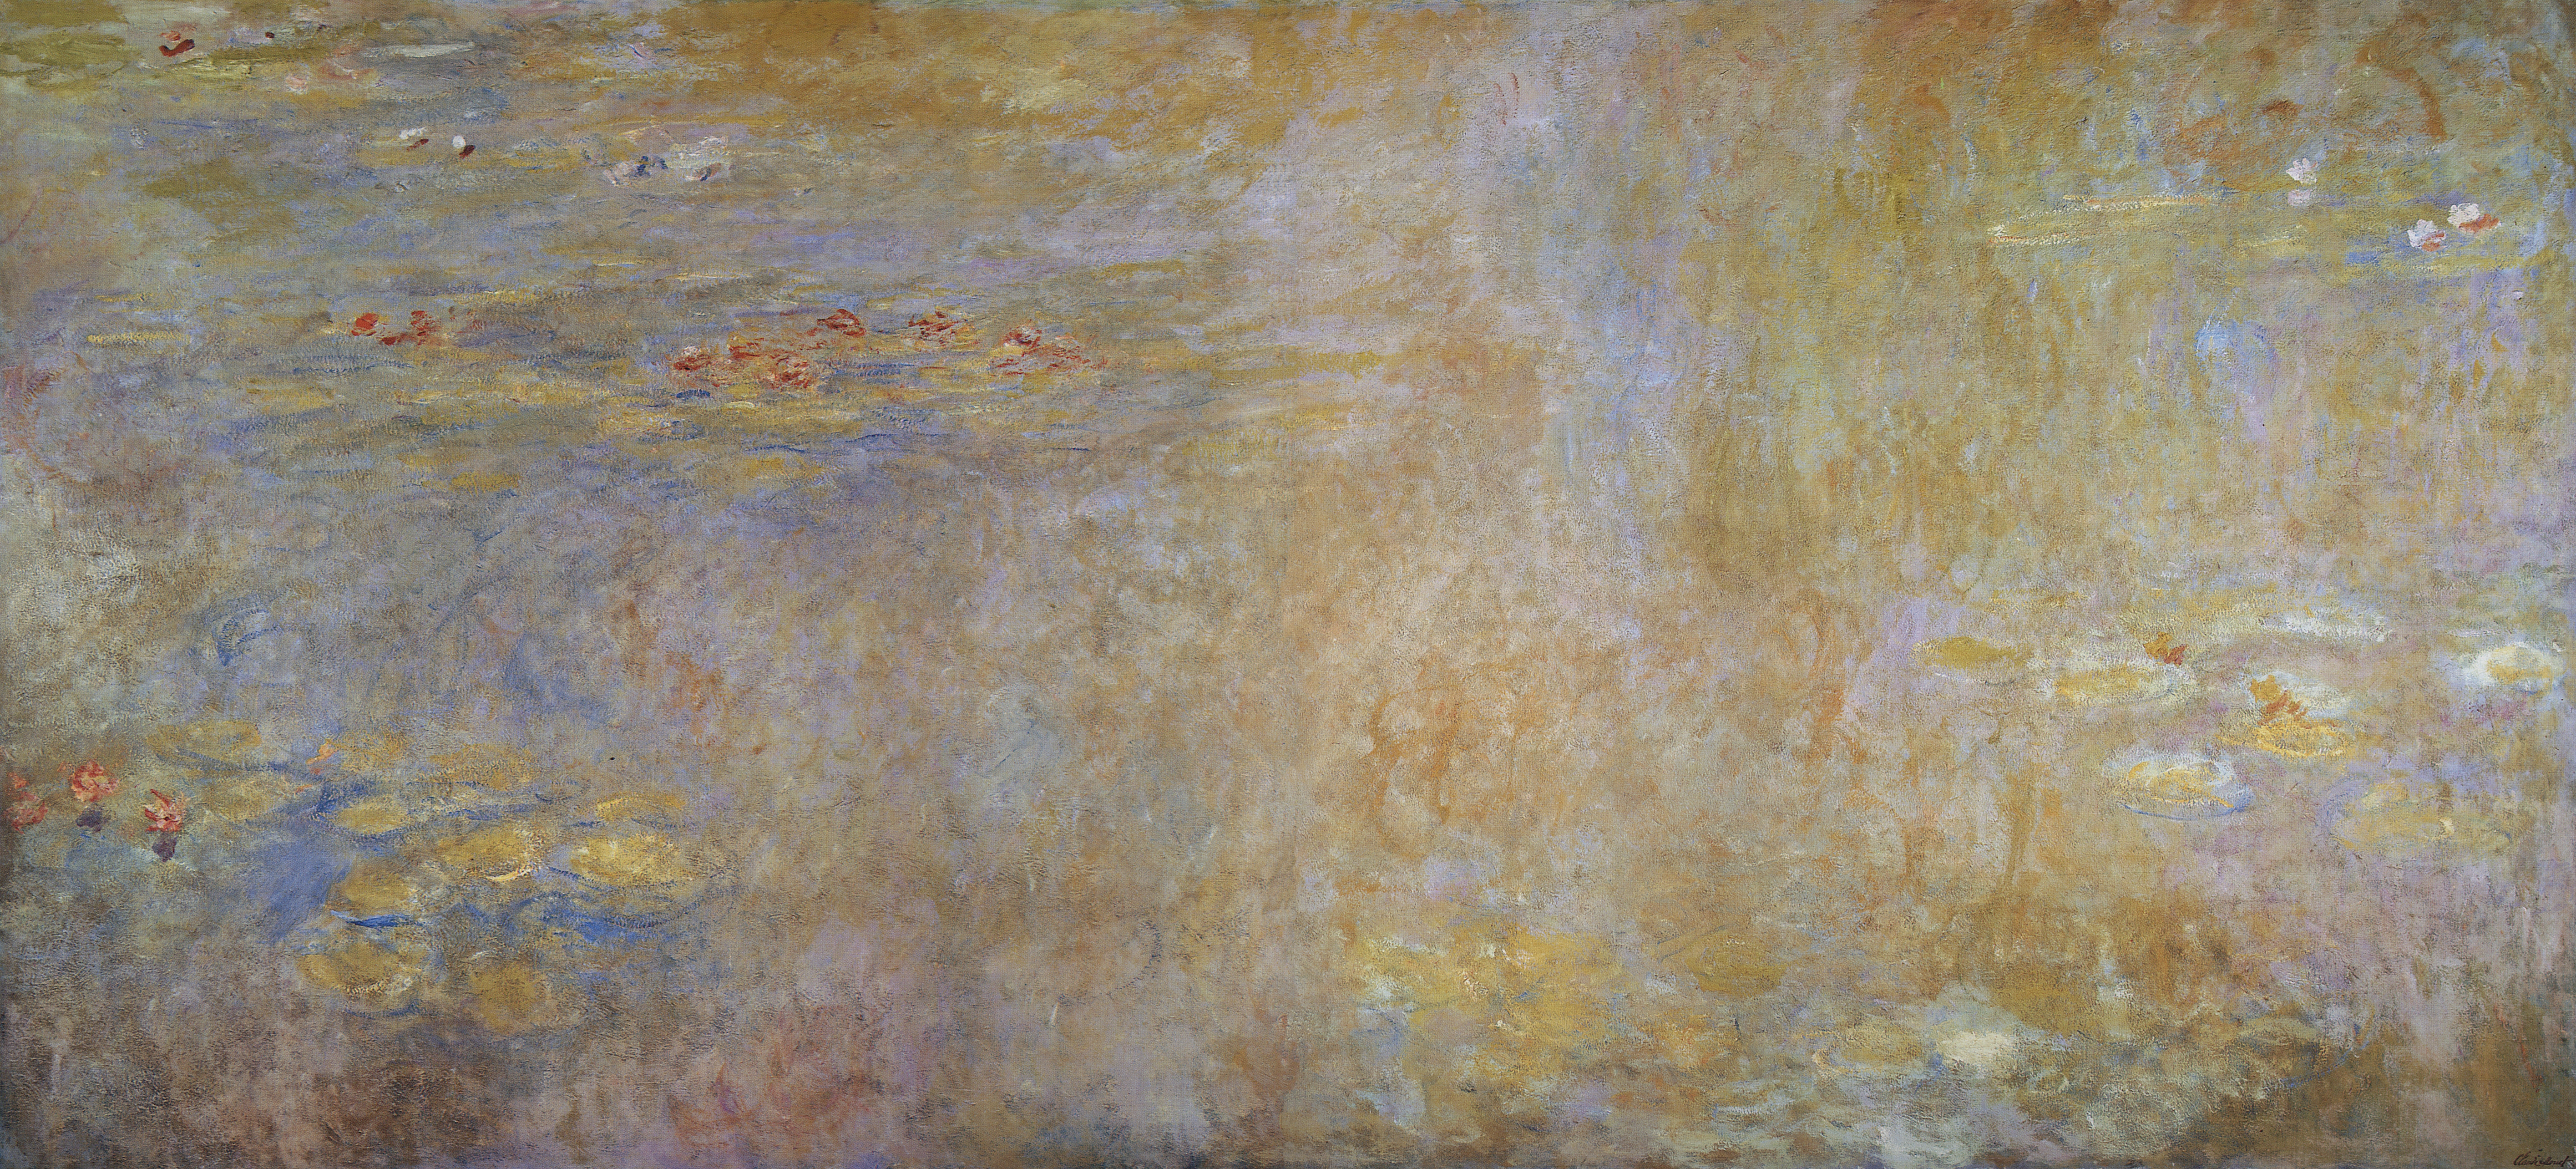 Моне Клод. Водяные лилии. 1916